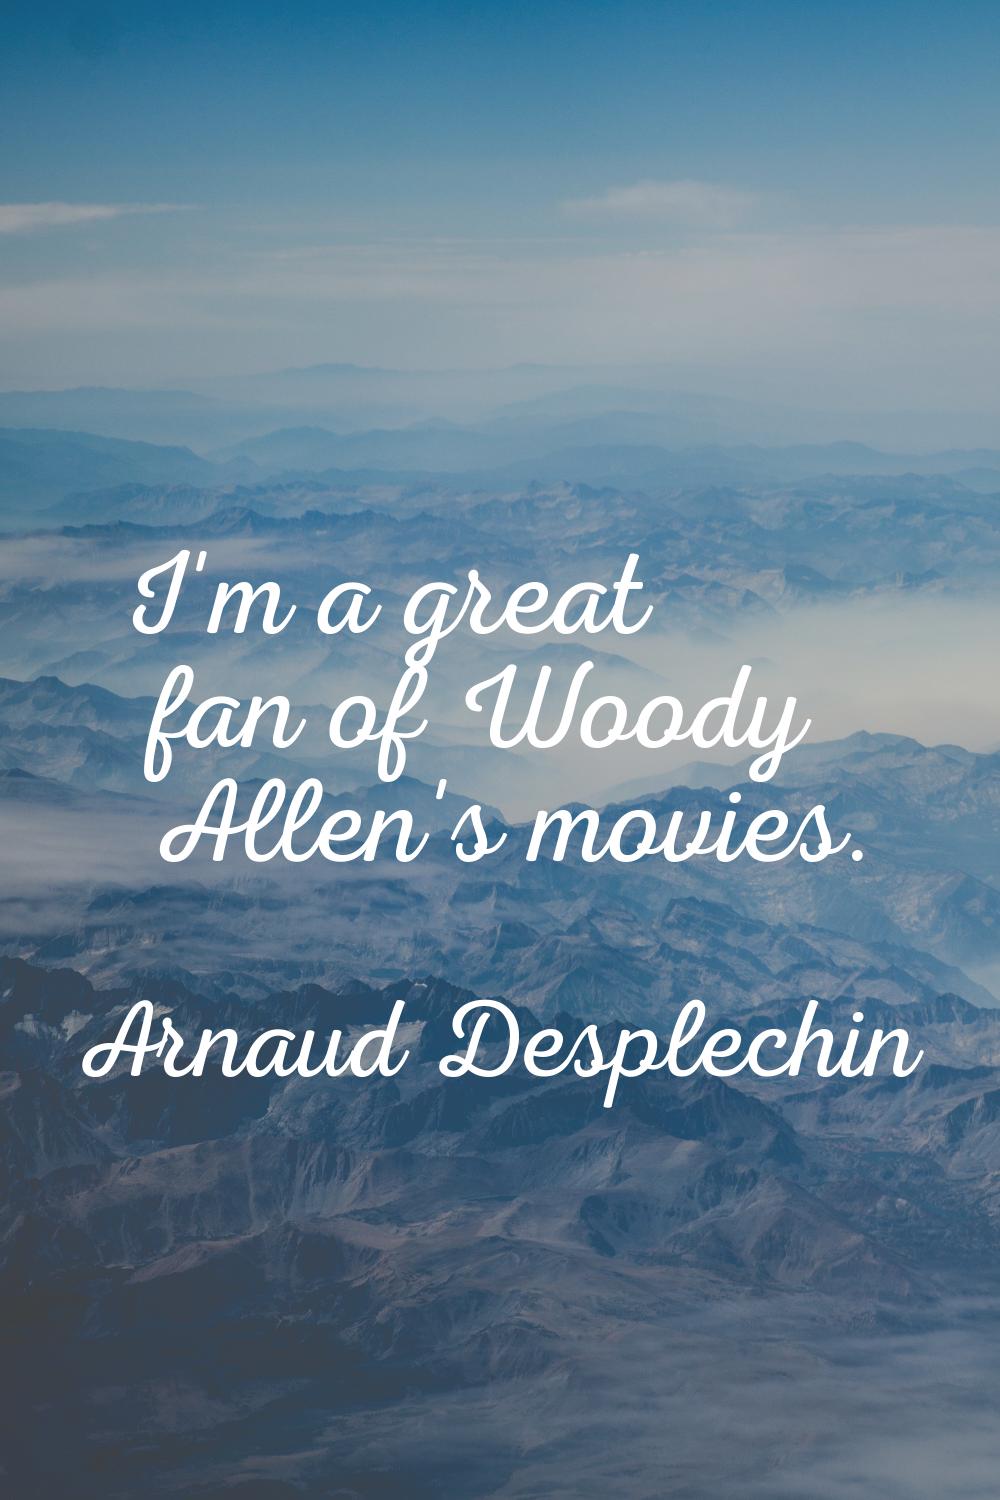 I'm a great fan of Woody Allen's movies.